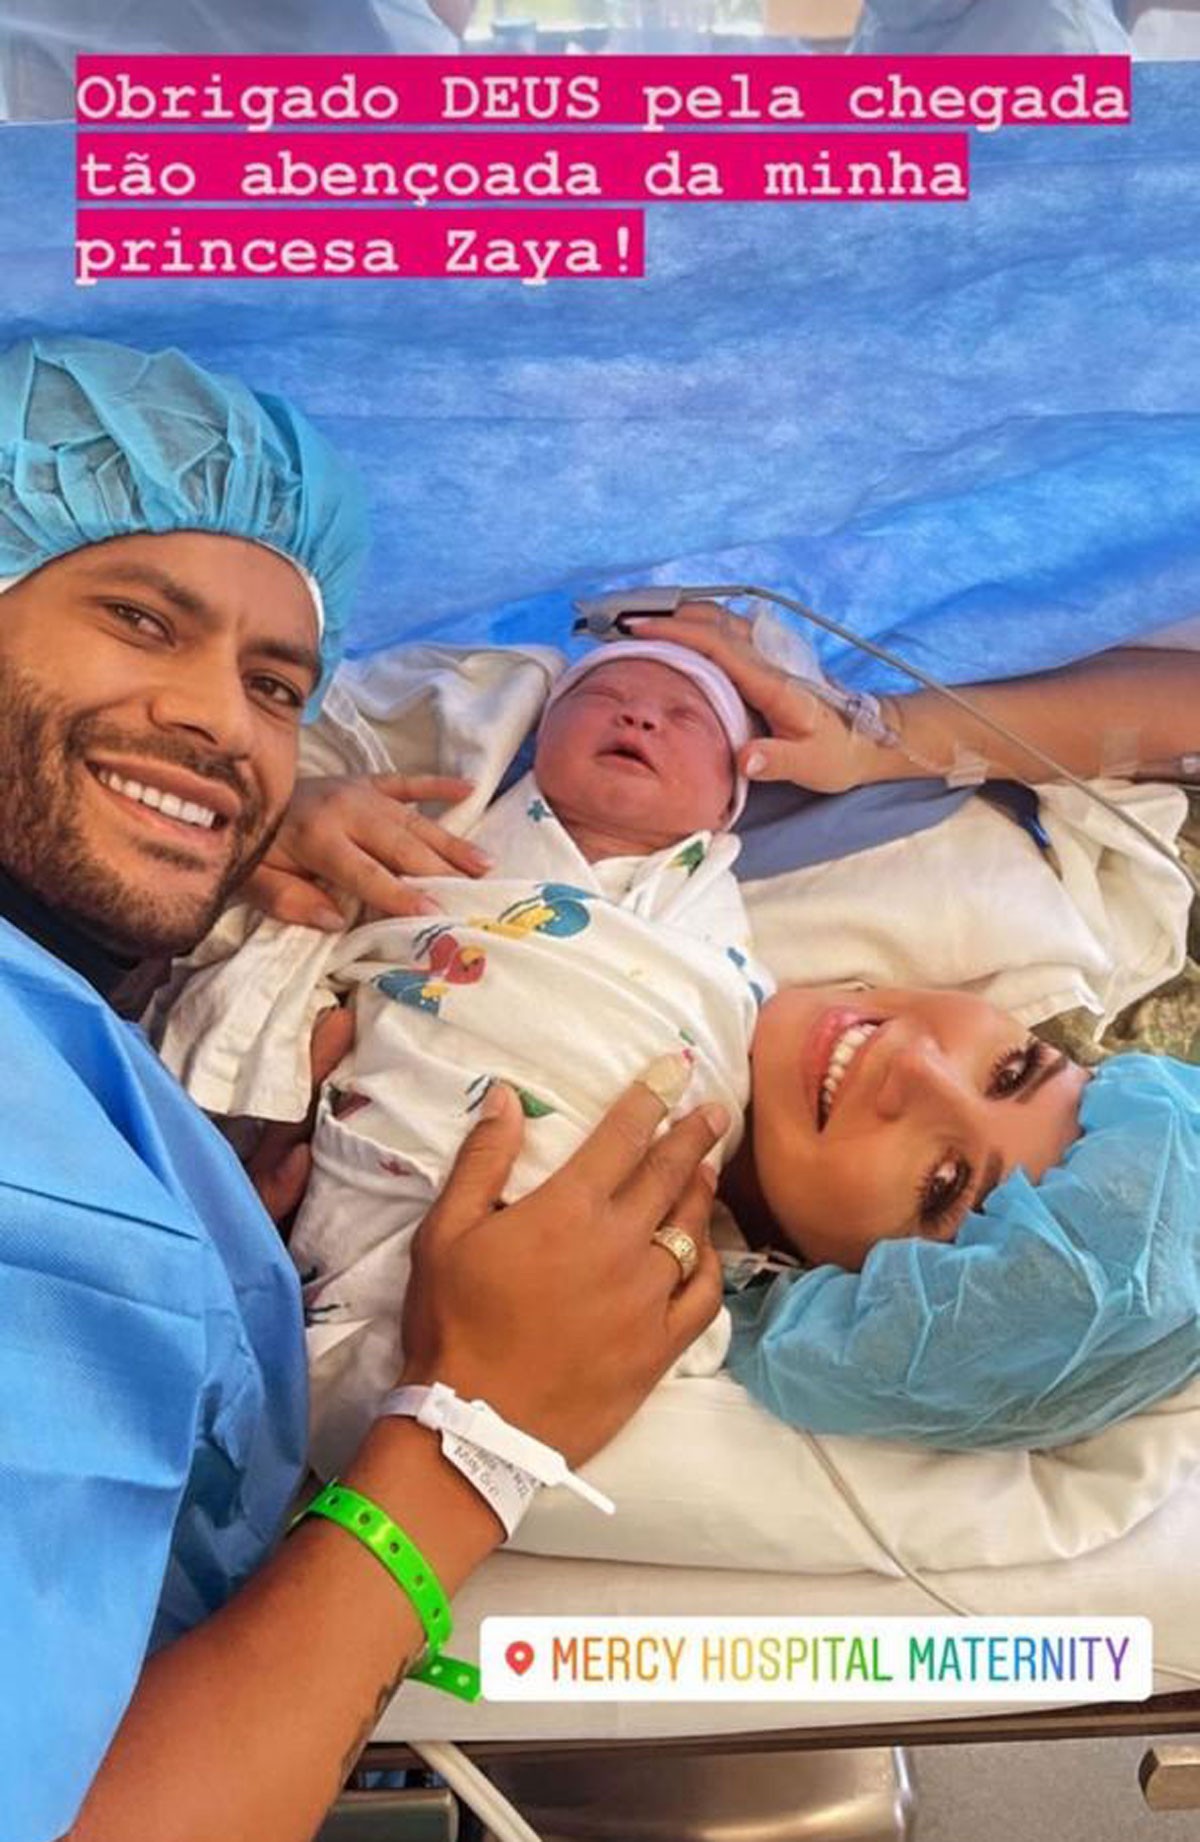 Hulk Paraíba anuncia nascimento de Zaya  (Foto: Reprodução/Instagram)